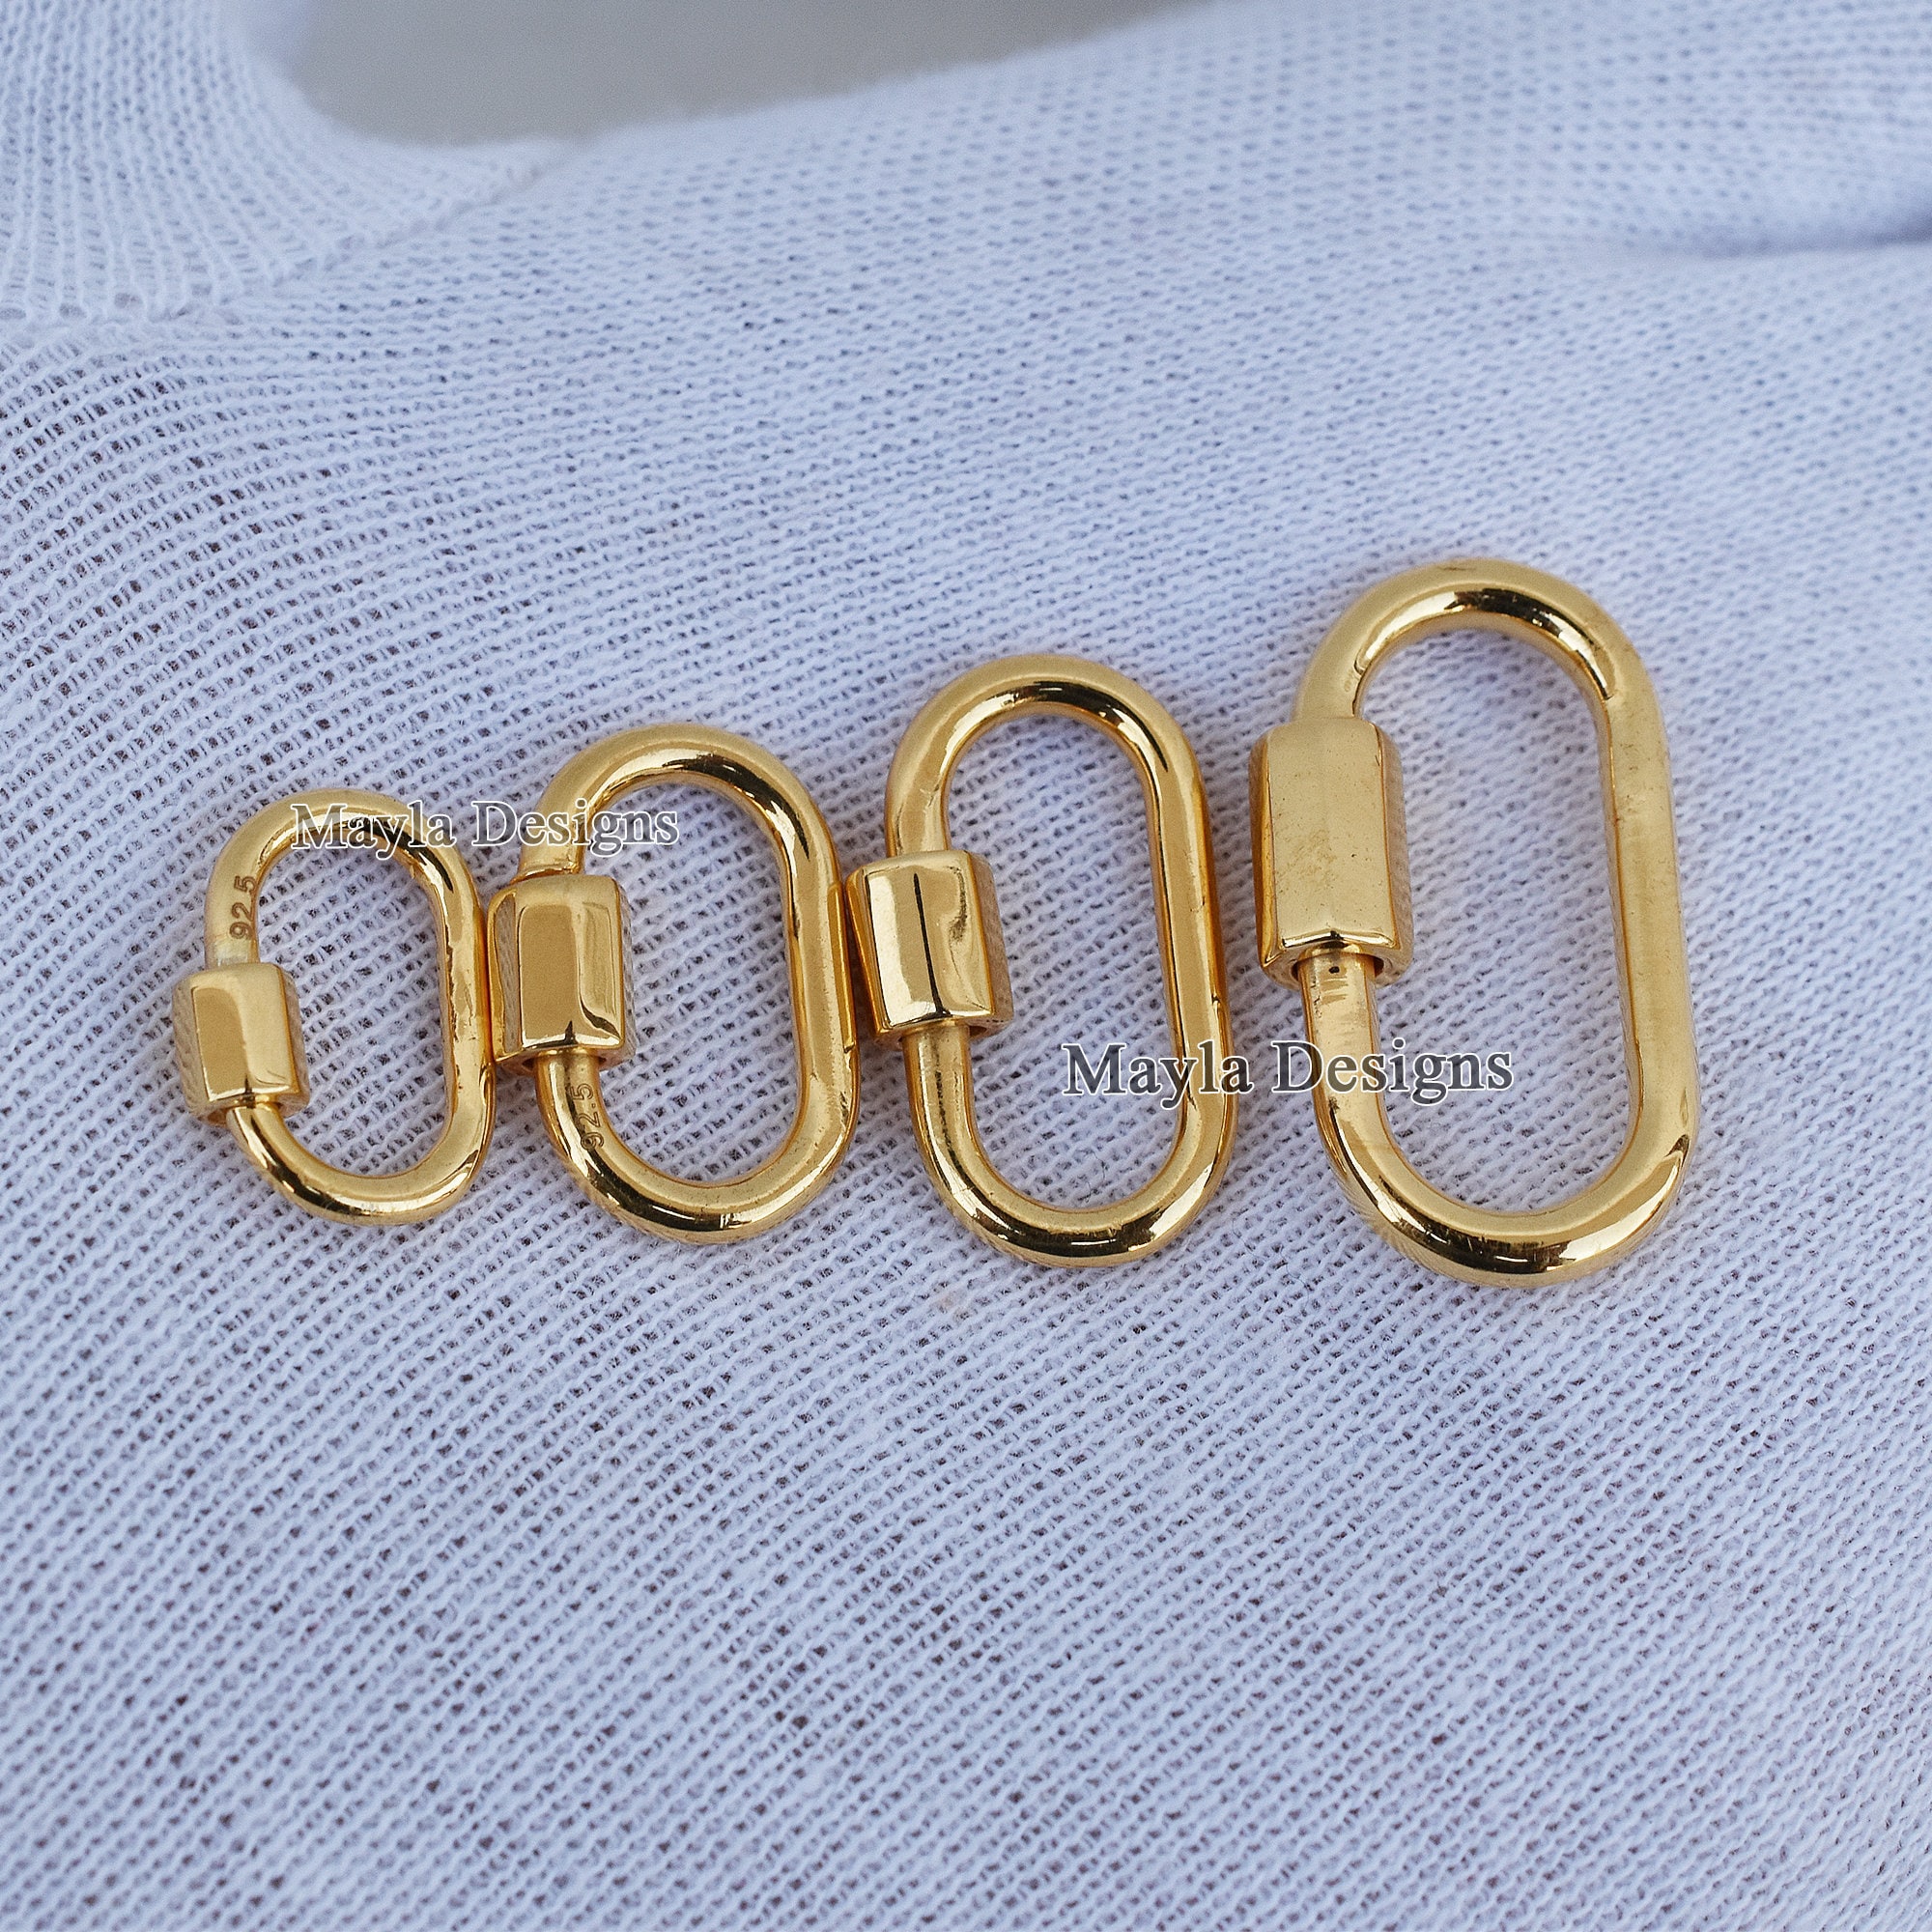 14K Gold Carabiner Necklace, Gold Carabiner Lock, 14k Gold Carabiner Lock  14k Oval Carabiner Jewelry, Gold Elongated Link, Carabiner Gold 